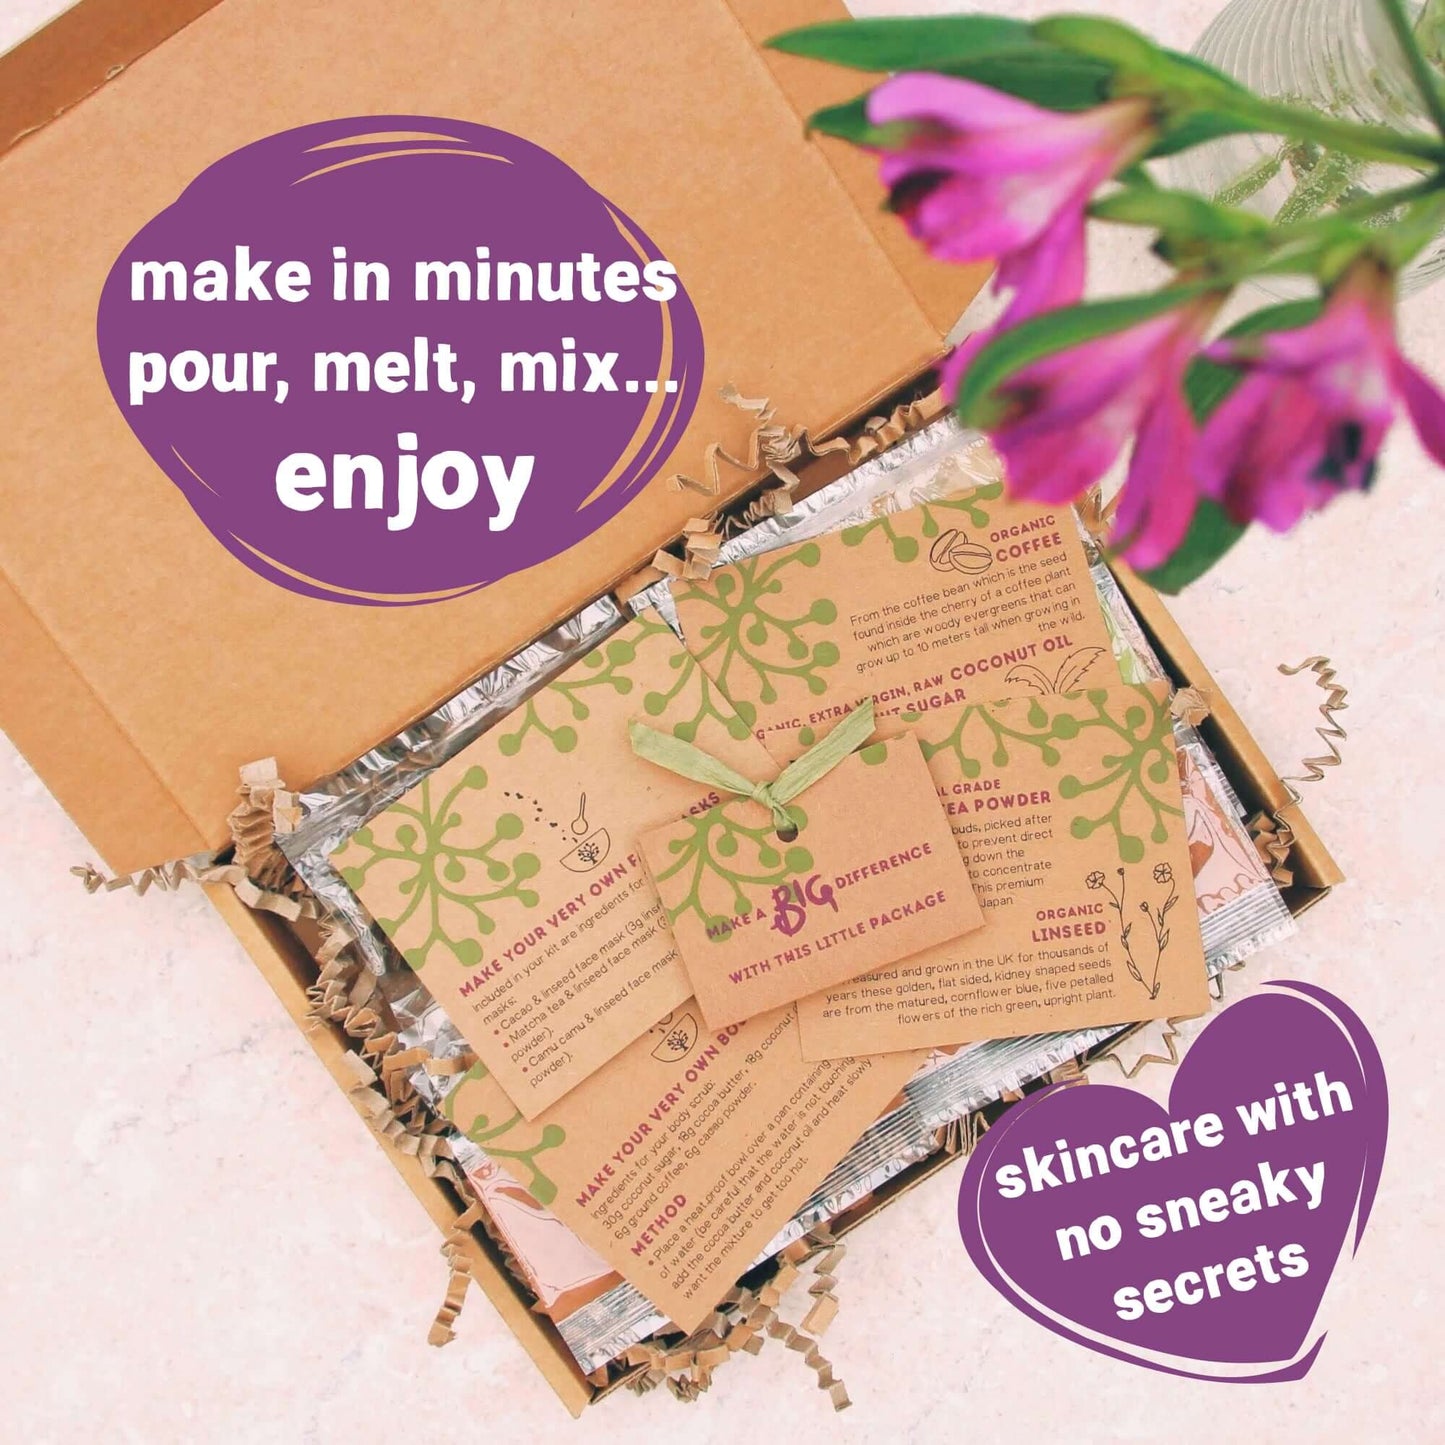 natural, organic vegan diy skincare inside mum letterbox gift